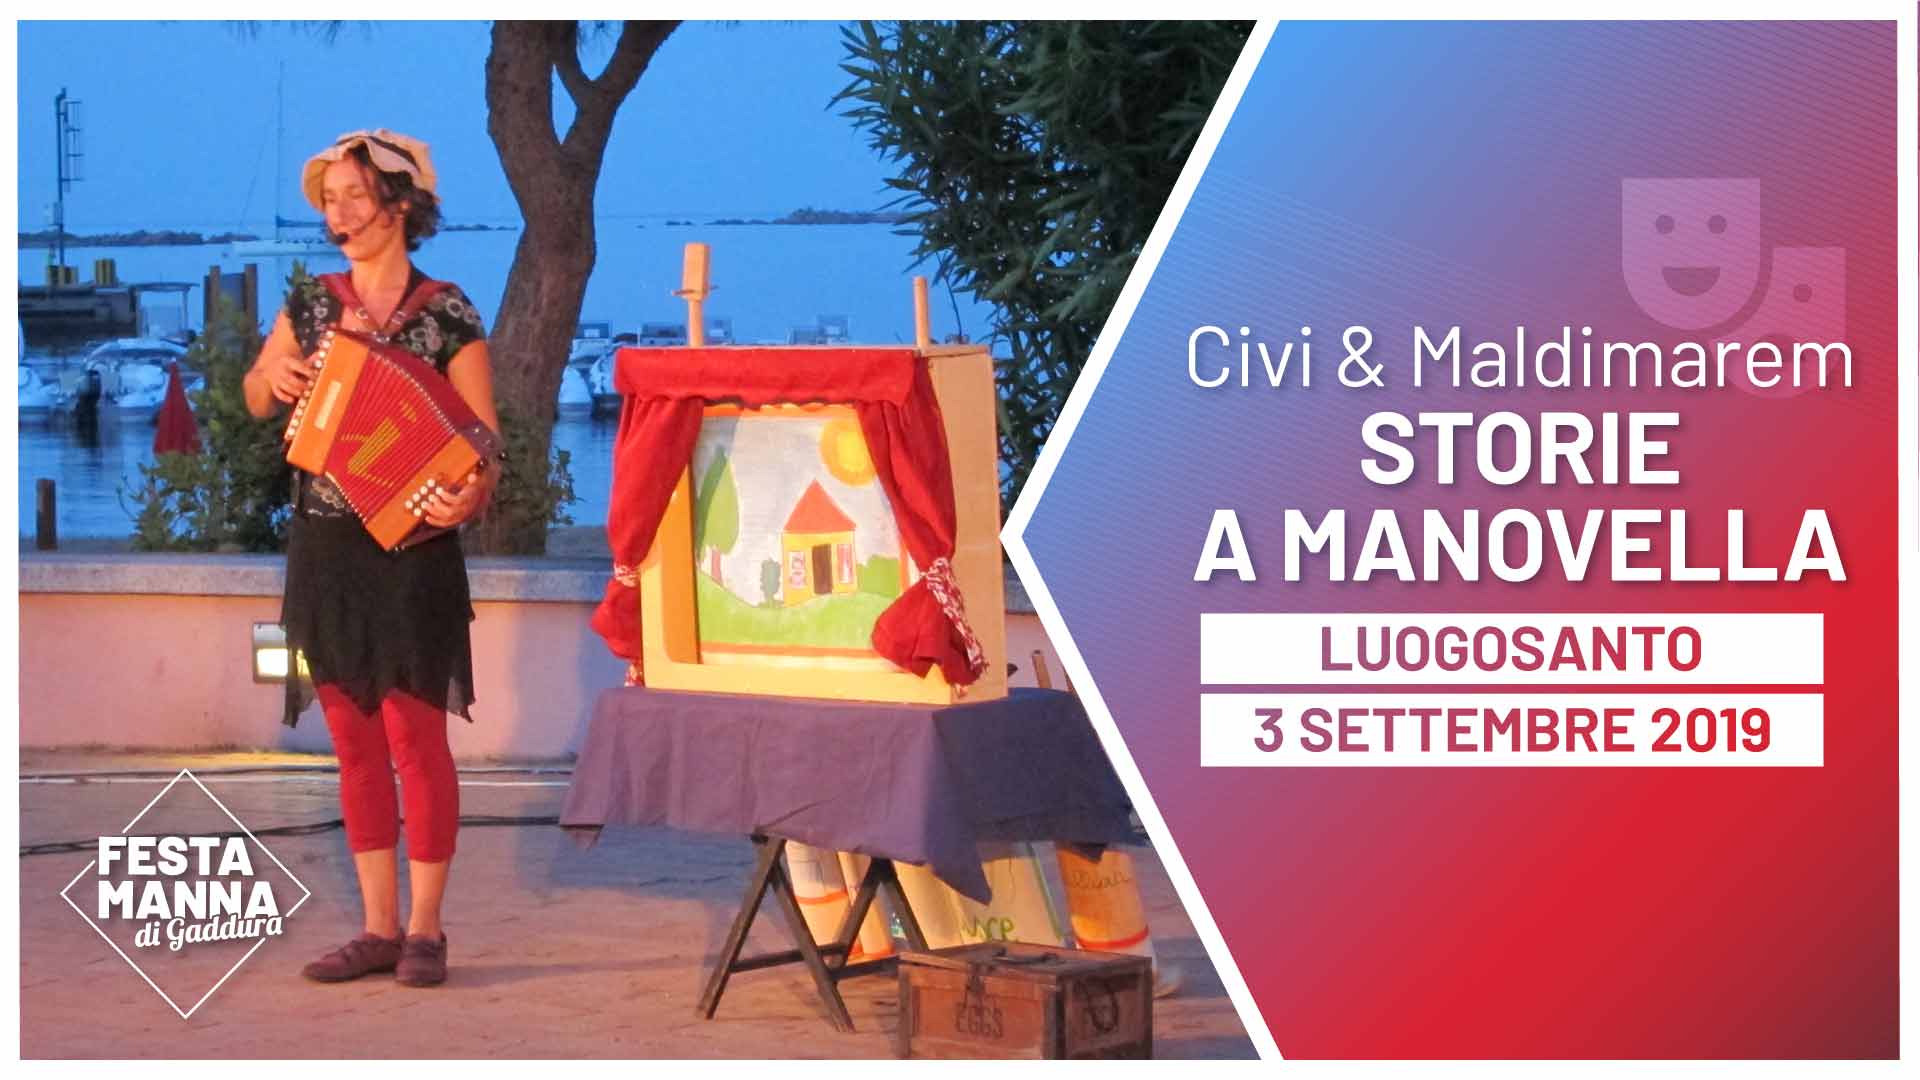 “Storie a manovella”, Show für Kinder von 2 bis 10 Jahren von Civi und Maldimarem